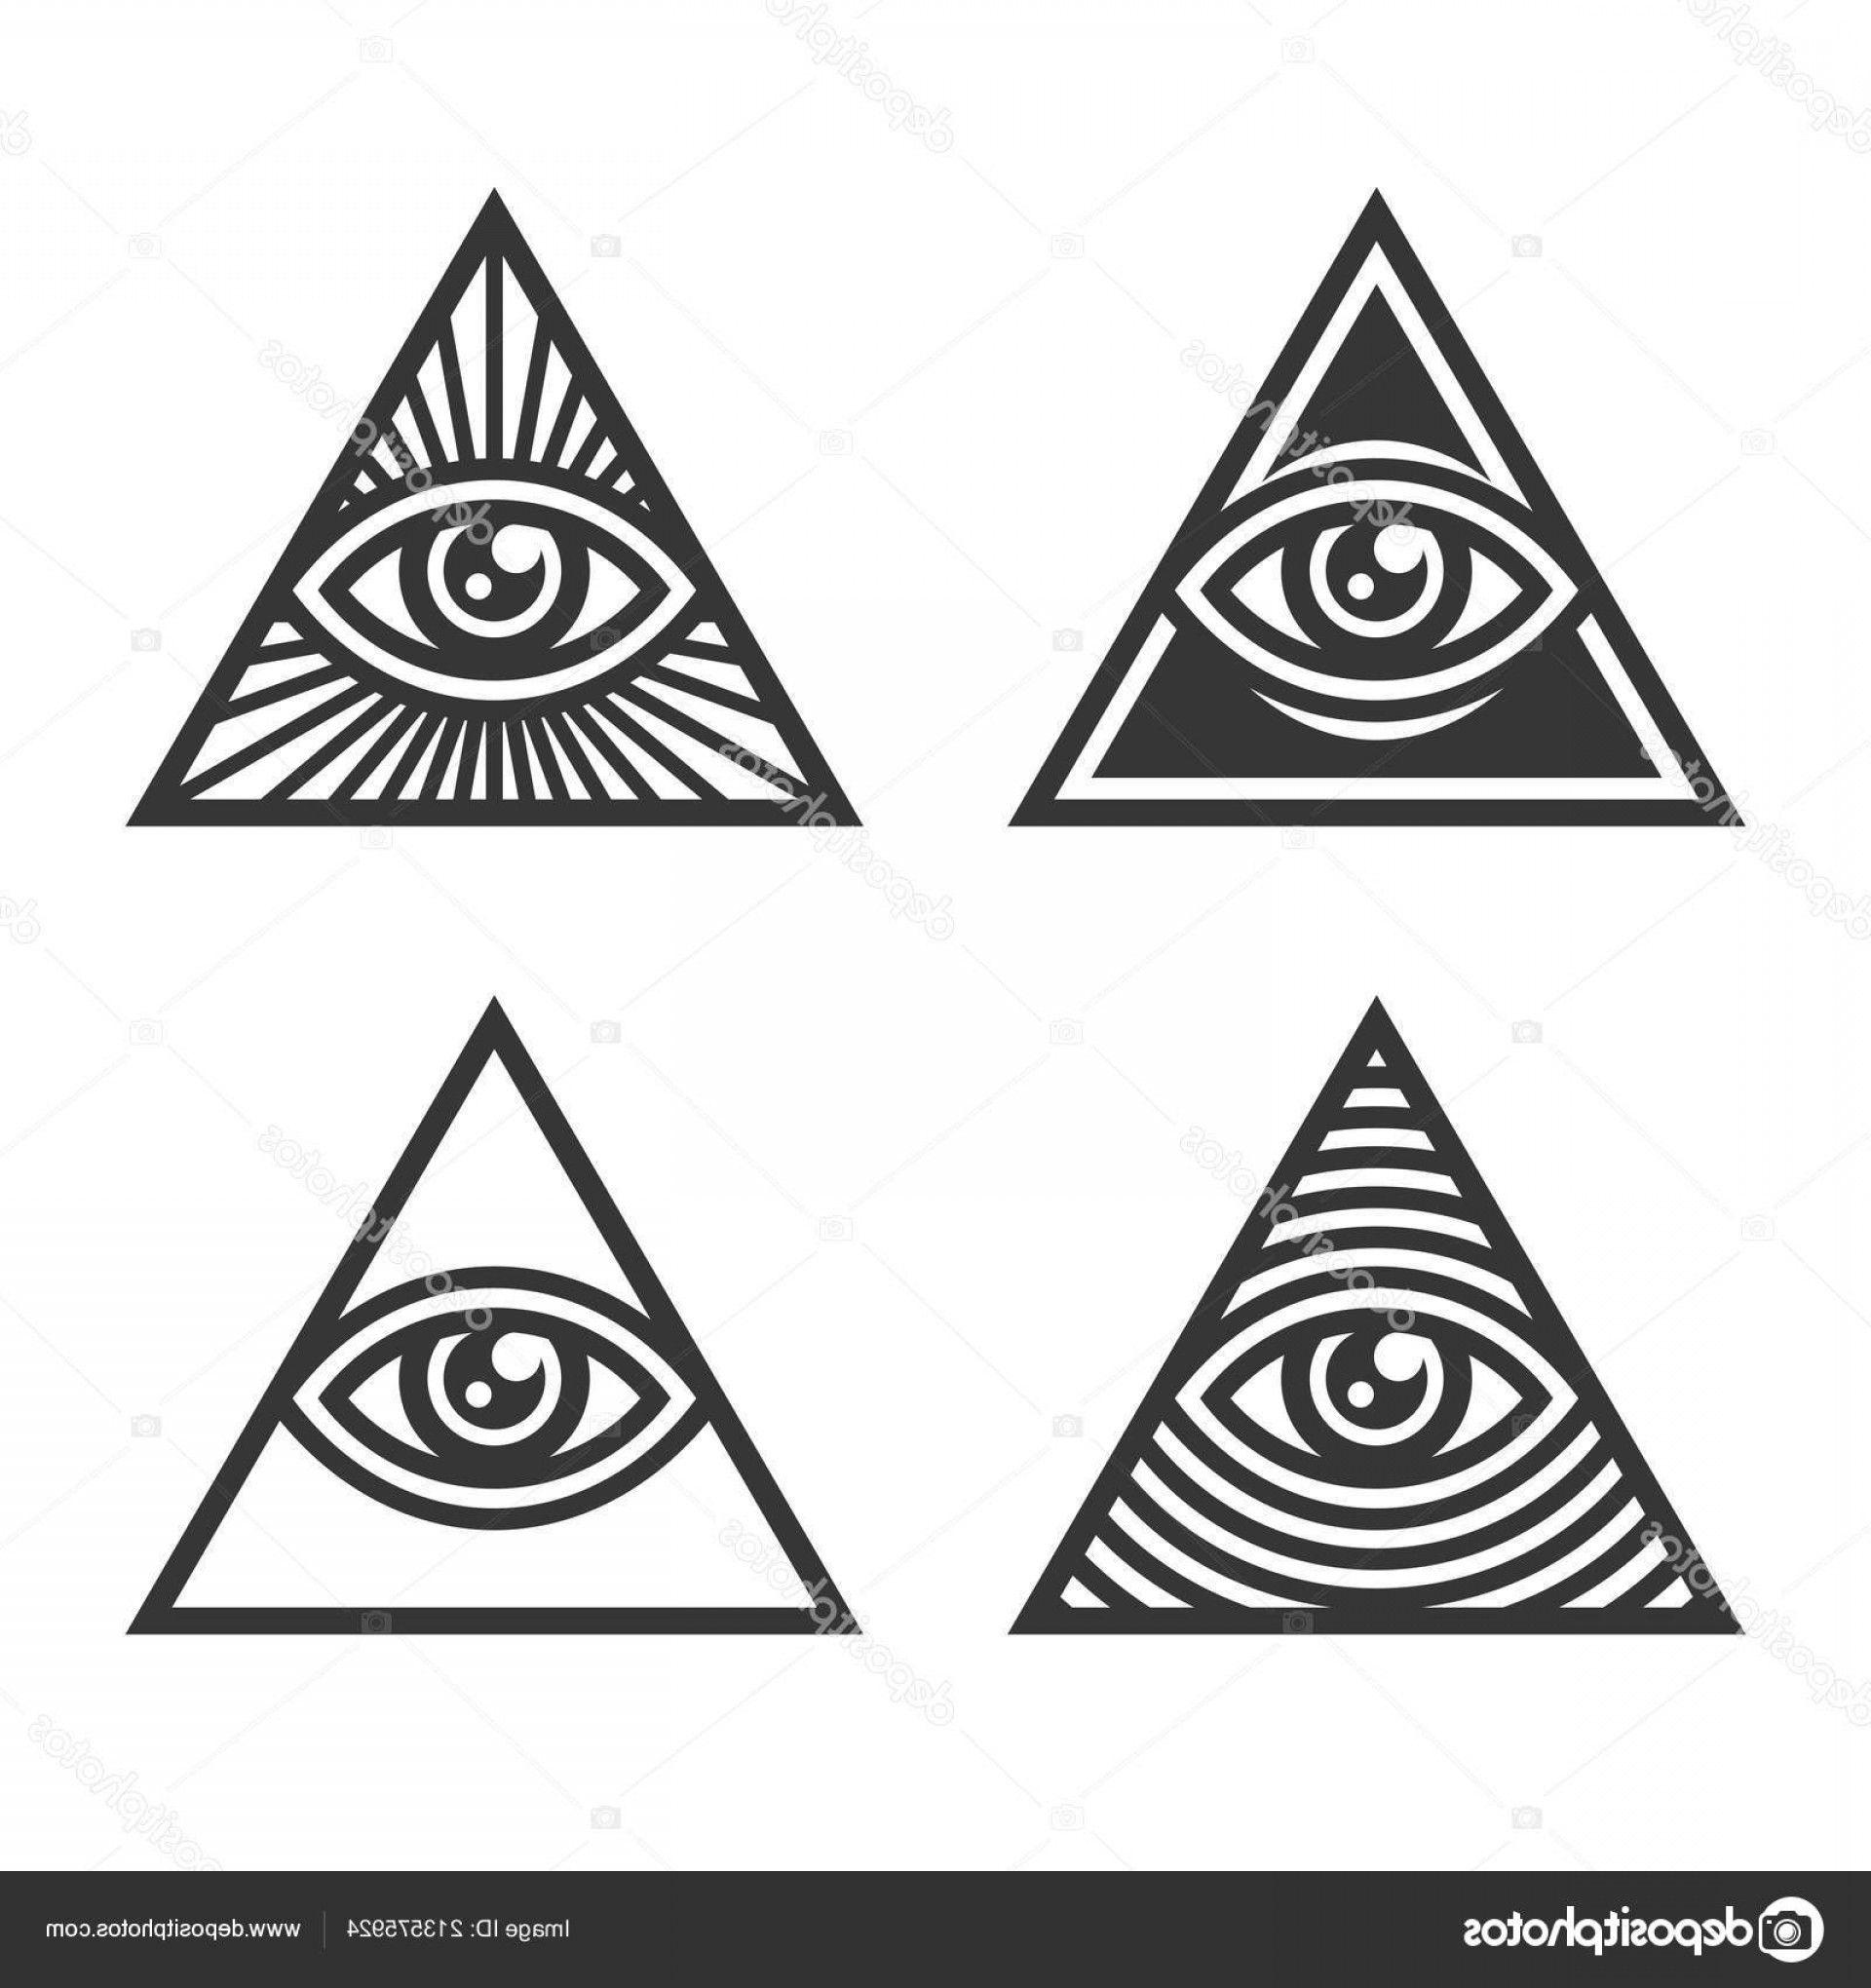 Black and White Triangle with Eye Logo - Stock Illustration Masonic Illuminati Symbols Eye Triangle